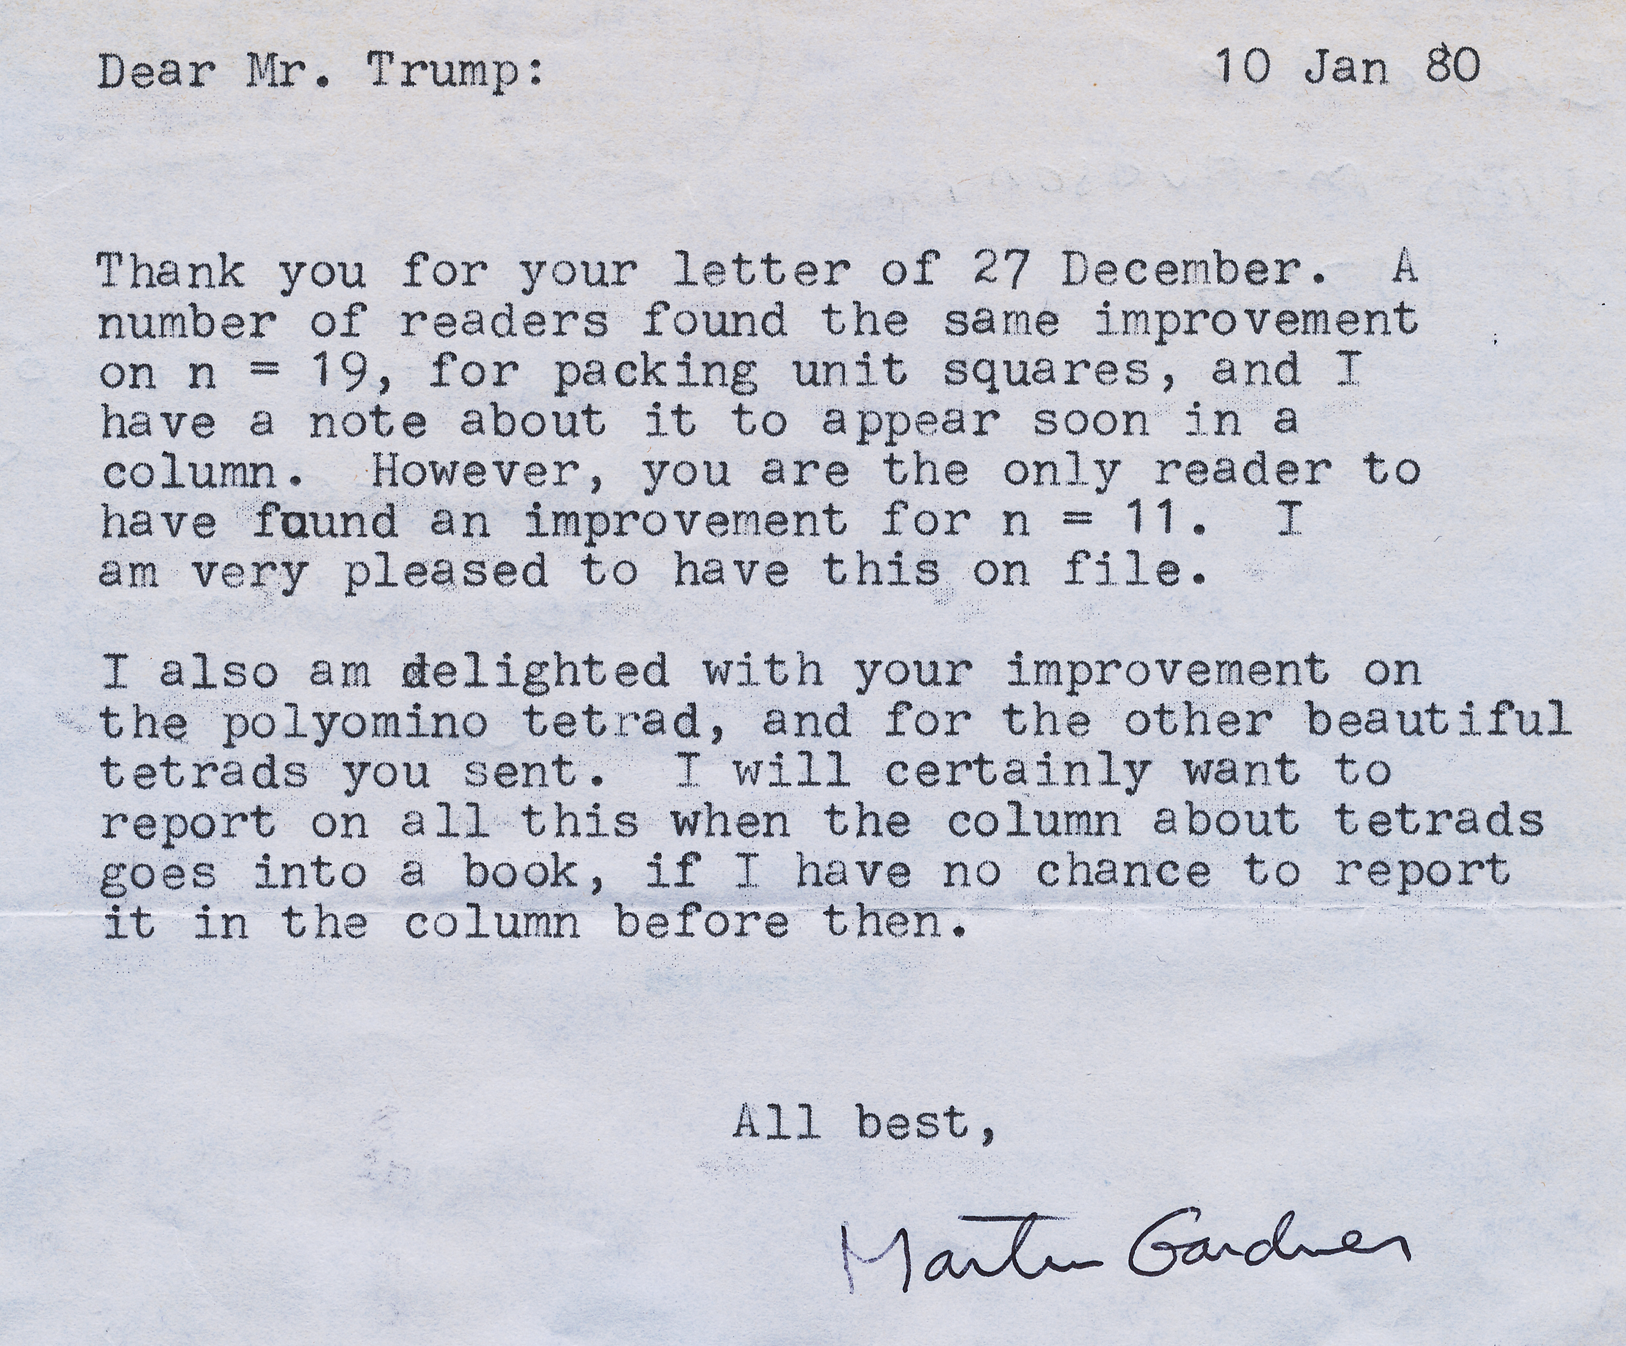 Letter from Martin Gardner